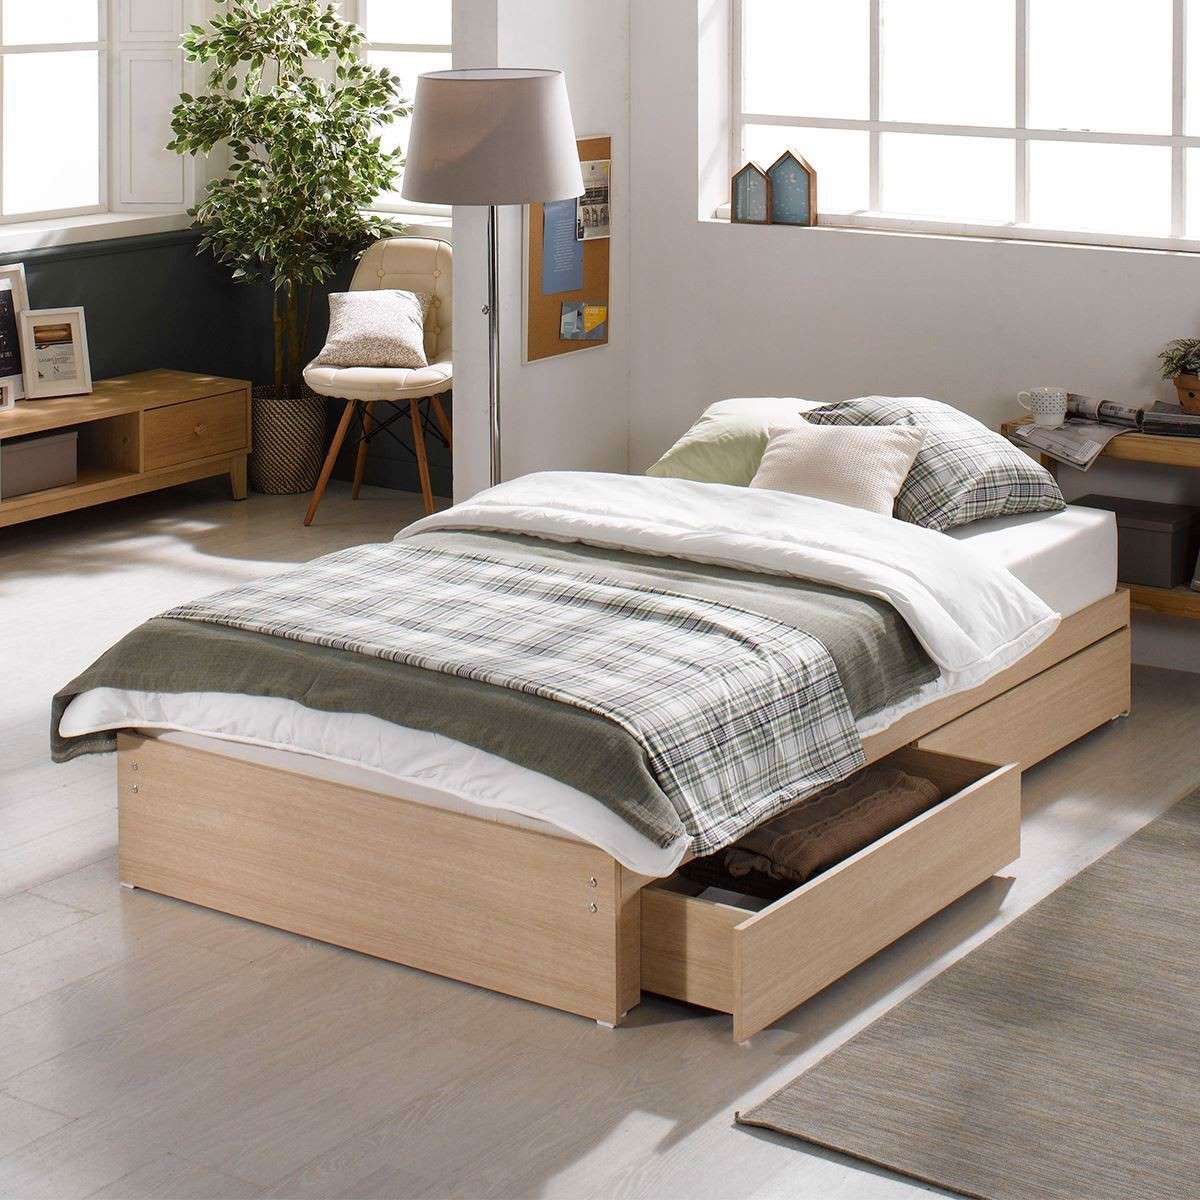 Mẫu giường ngủ đơn gỗ công nghiệp